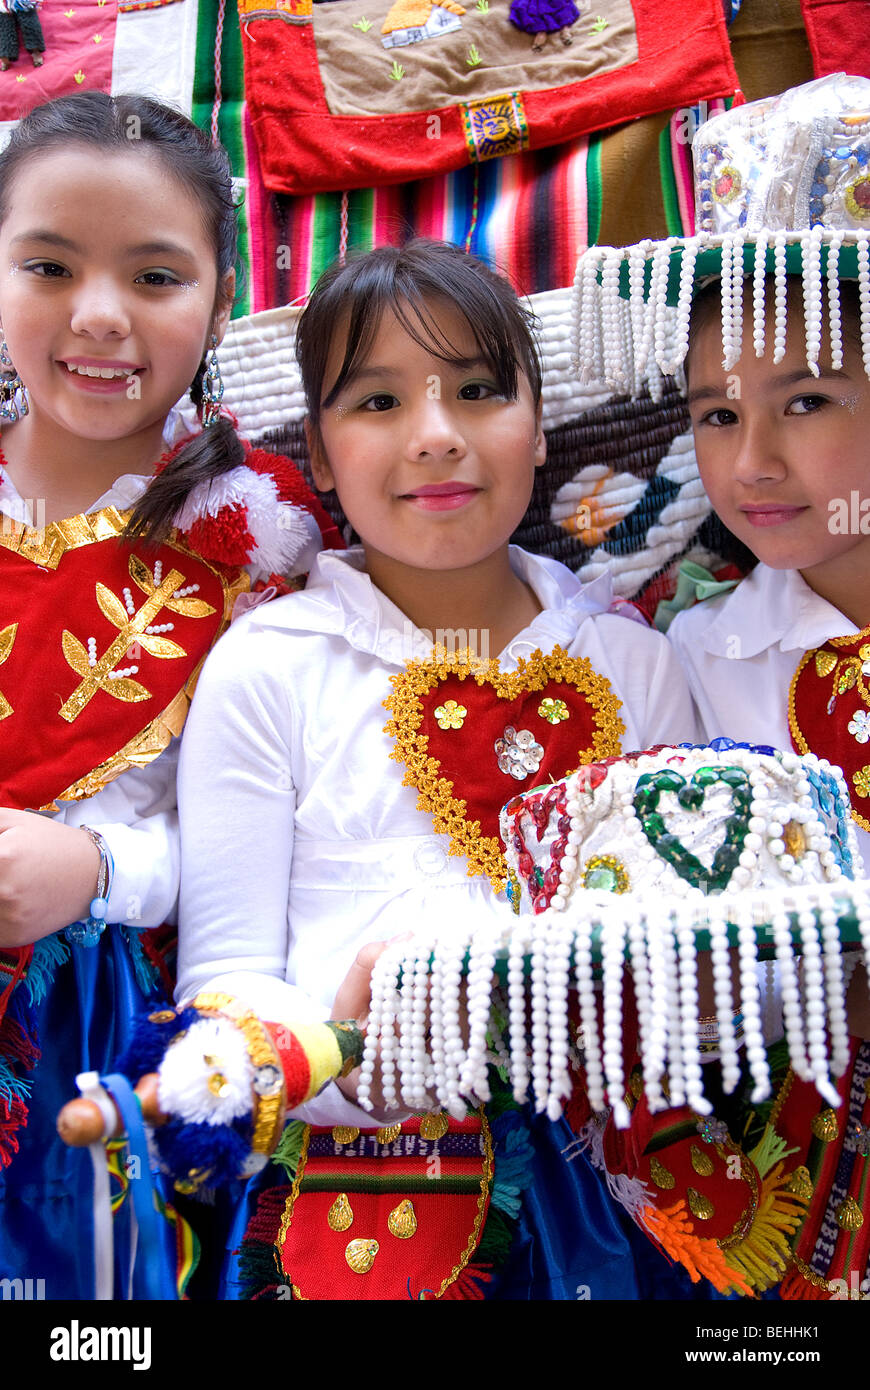 NYC Défilé hispanique (Desfile de la Hispanidad), célébrant le Hispanic-Latino Heritage, octobre est le Mois du patrimoine hispanique. Banque D'Images